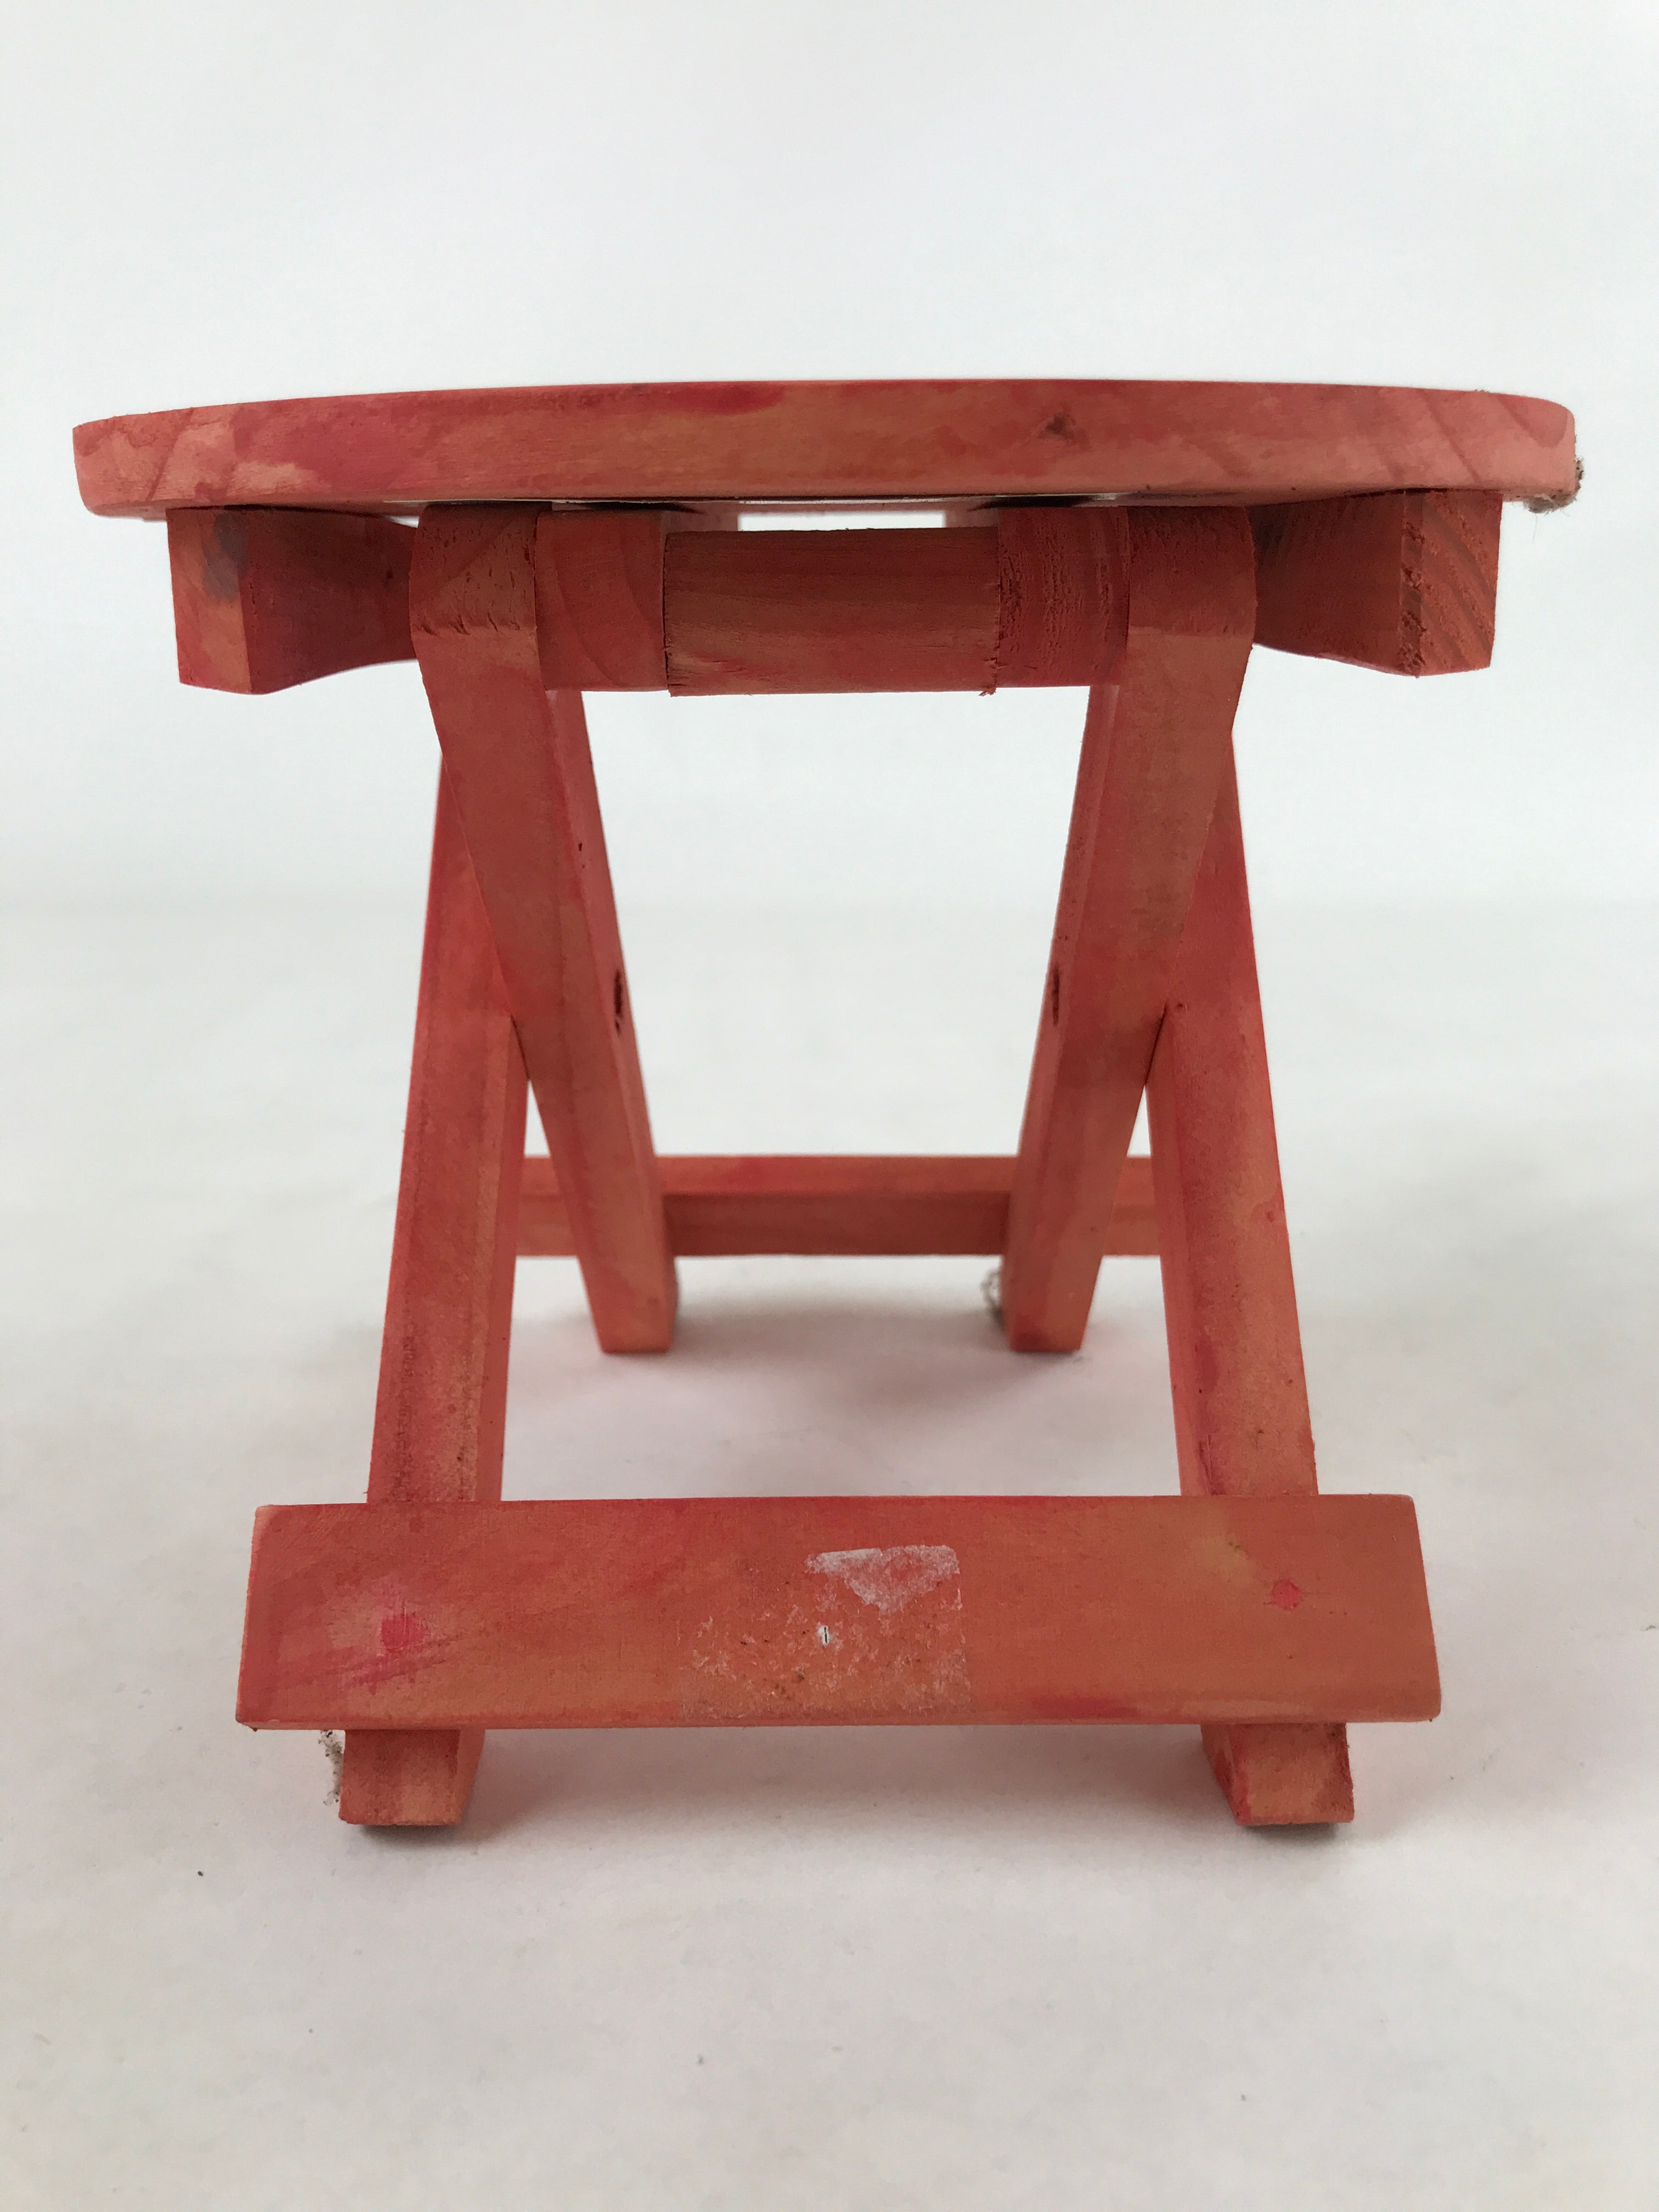 Japanese Wooden Folding Table Flower Vase Stand Vtg Doll Furniture Pink JK651